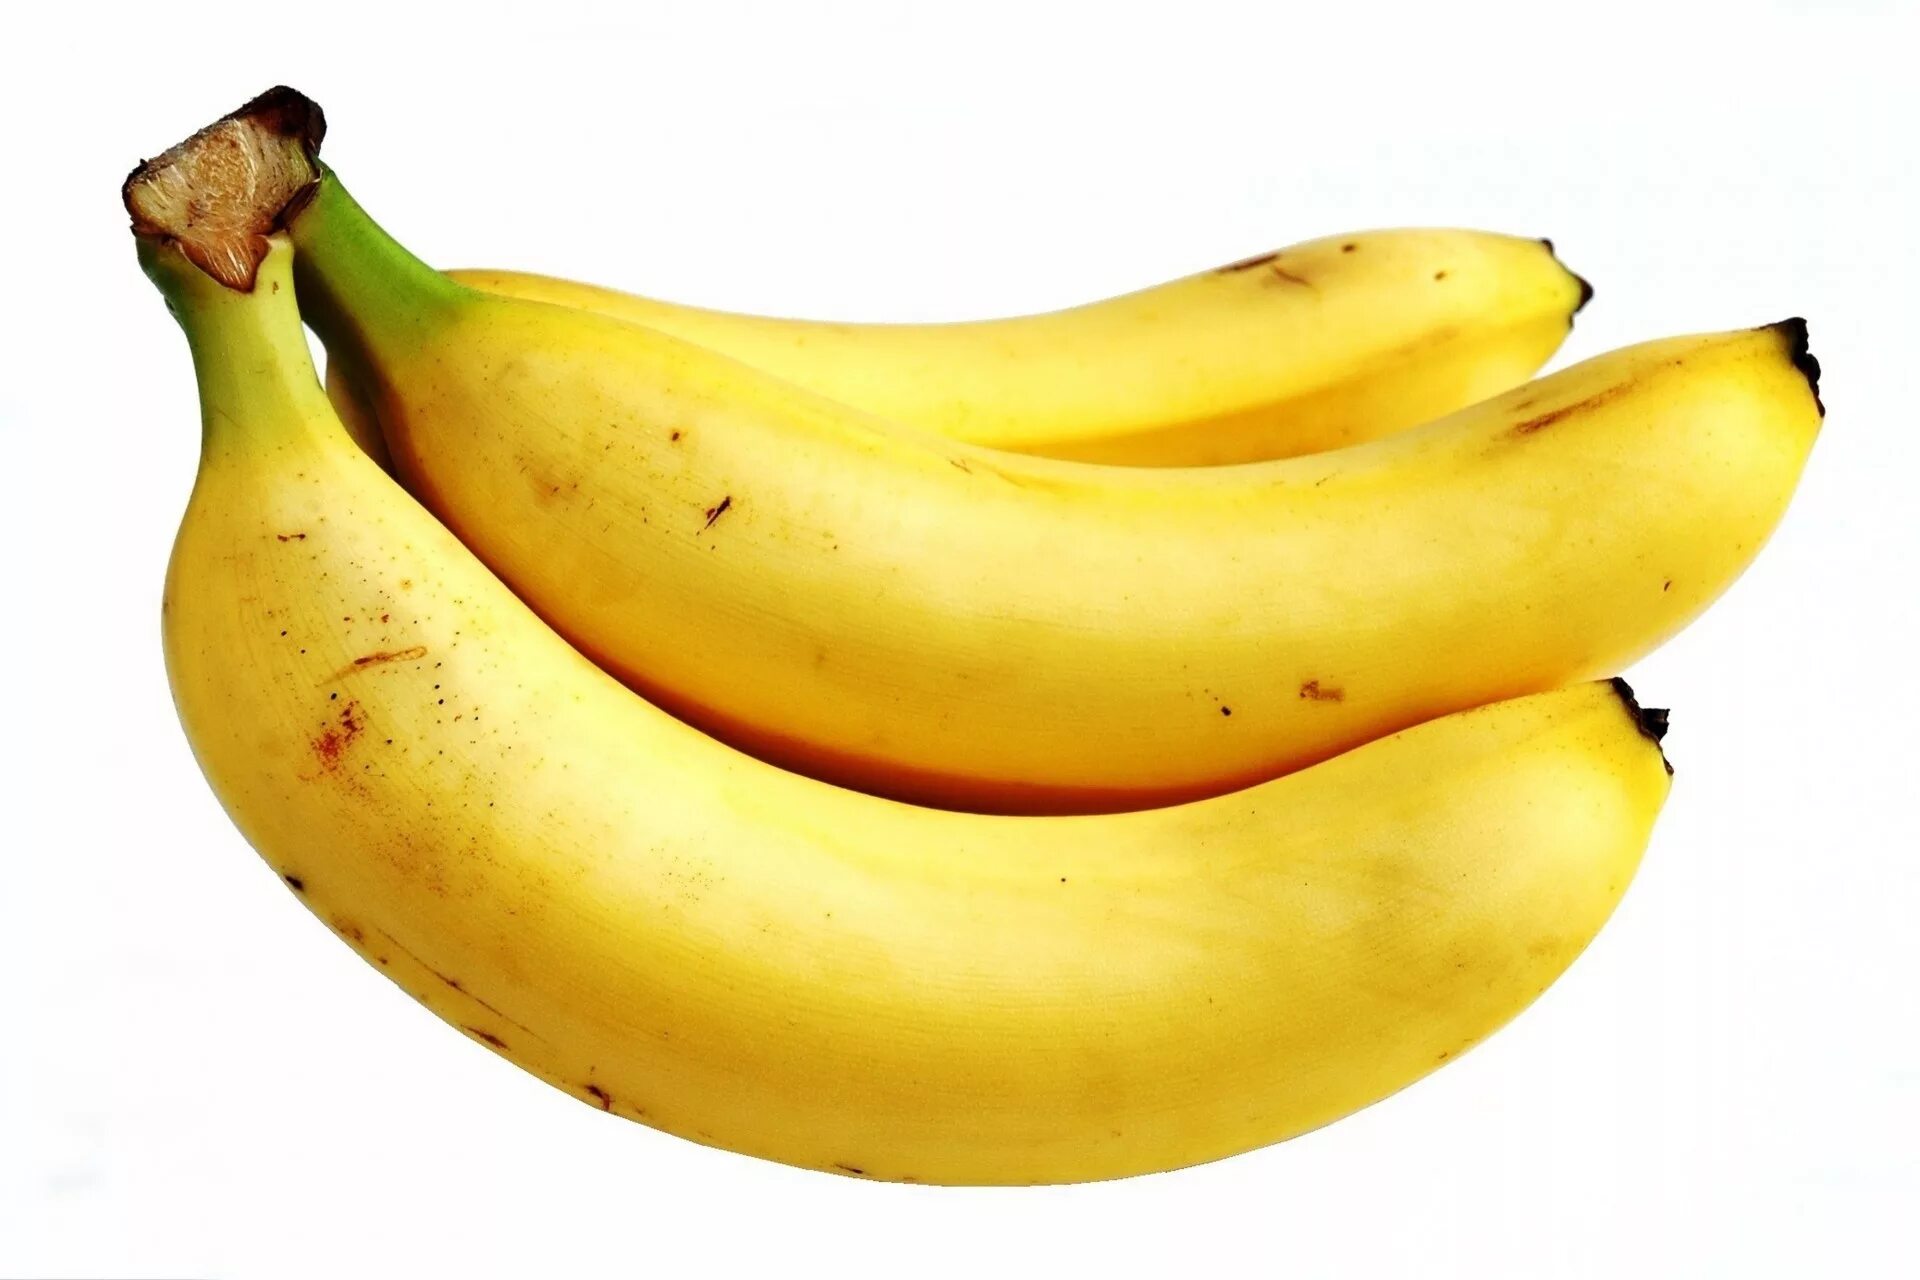 Банан на белом фоне. Банан на прозрачном фоне. Фрукты на белом фоне. Банан картинка на прозрачном фоне.